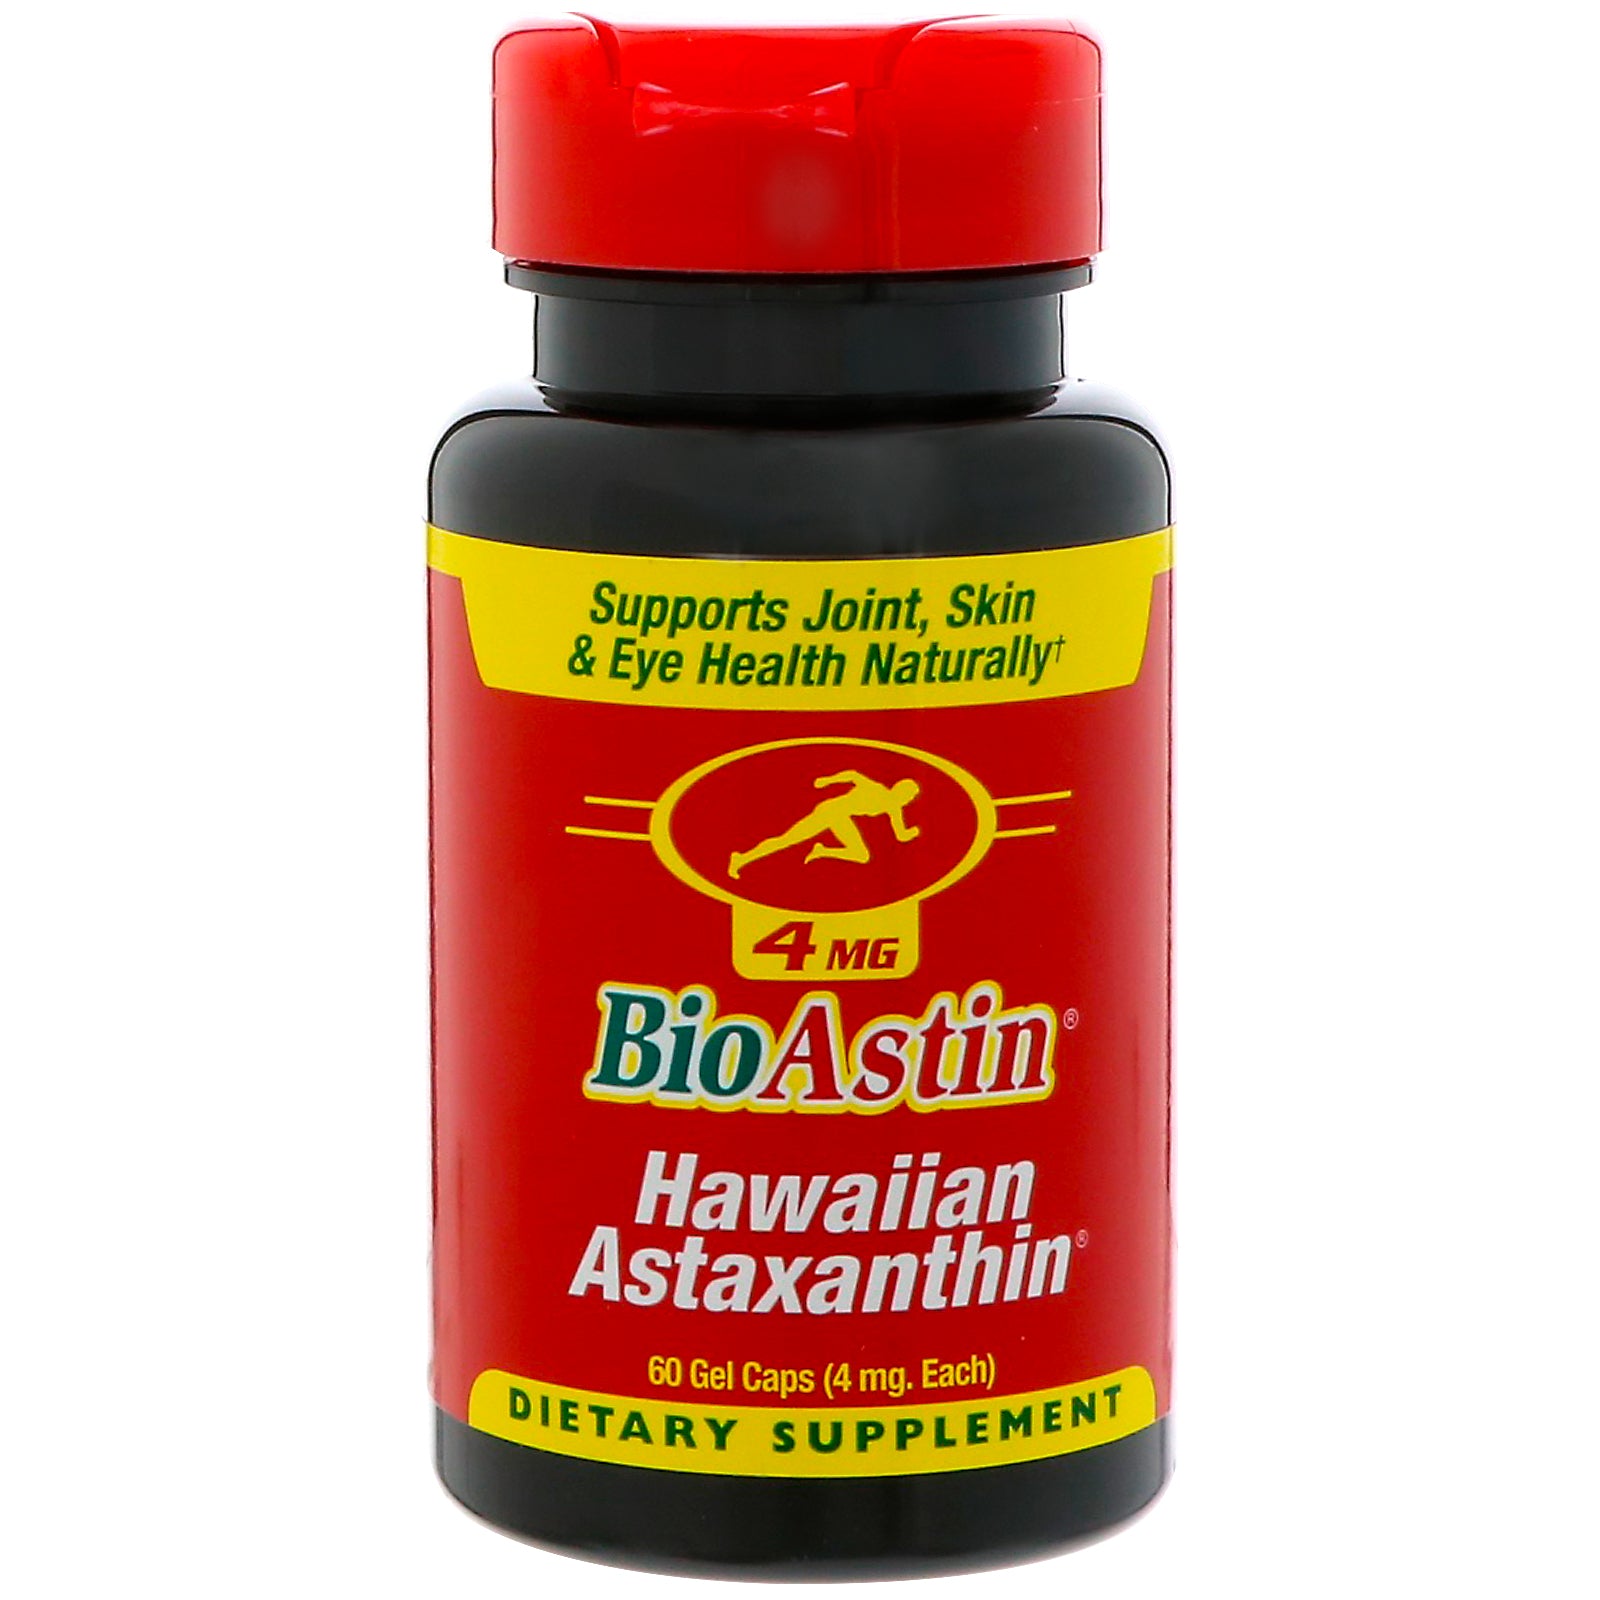 Nutrex Hawaii, BioAstin, Hawaiian Astaxanthin, 4 mg, 60 Gel Caps